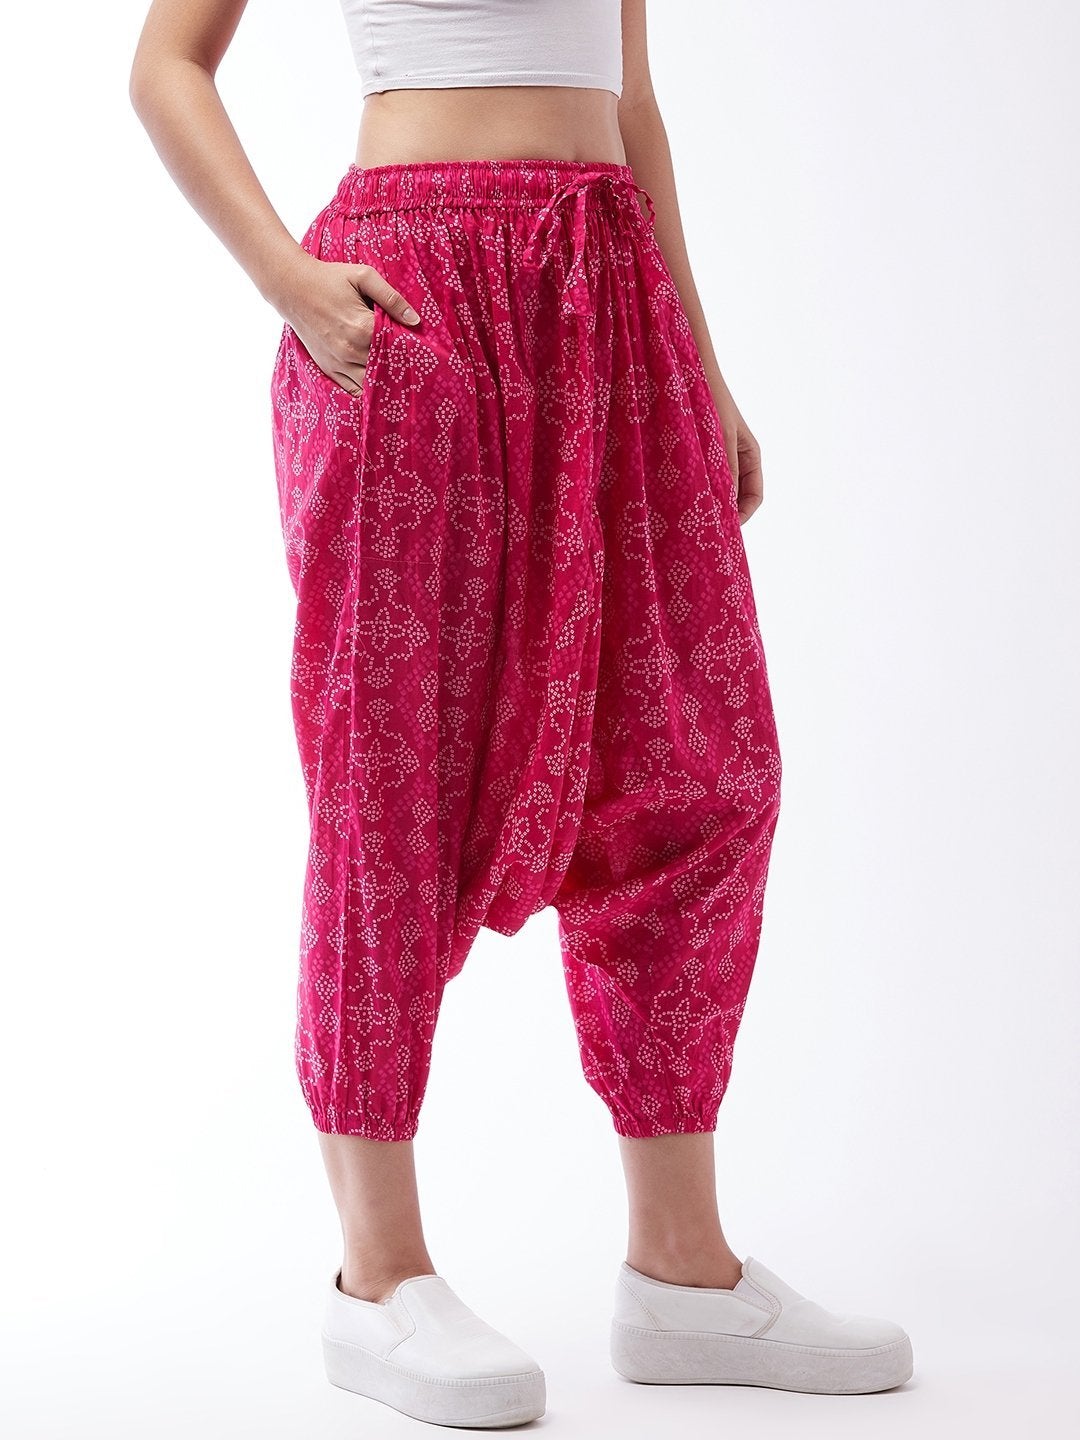 Women's Pink Bandhini Harem Pants For Teens - InWeave